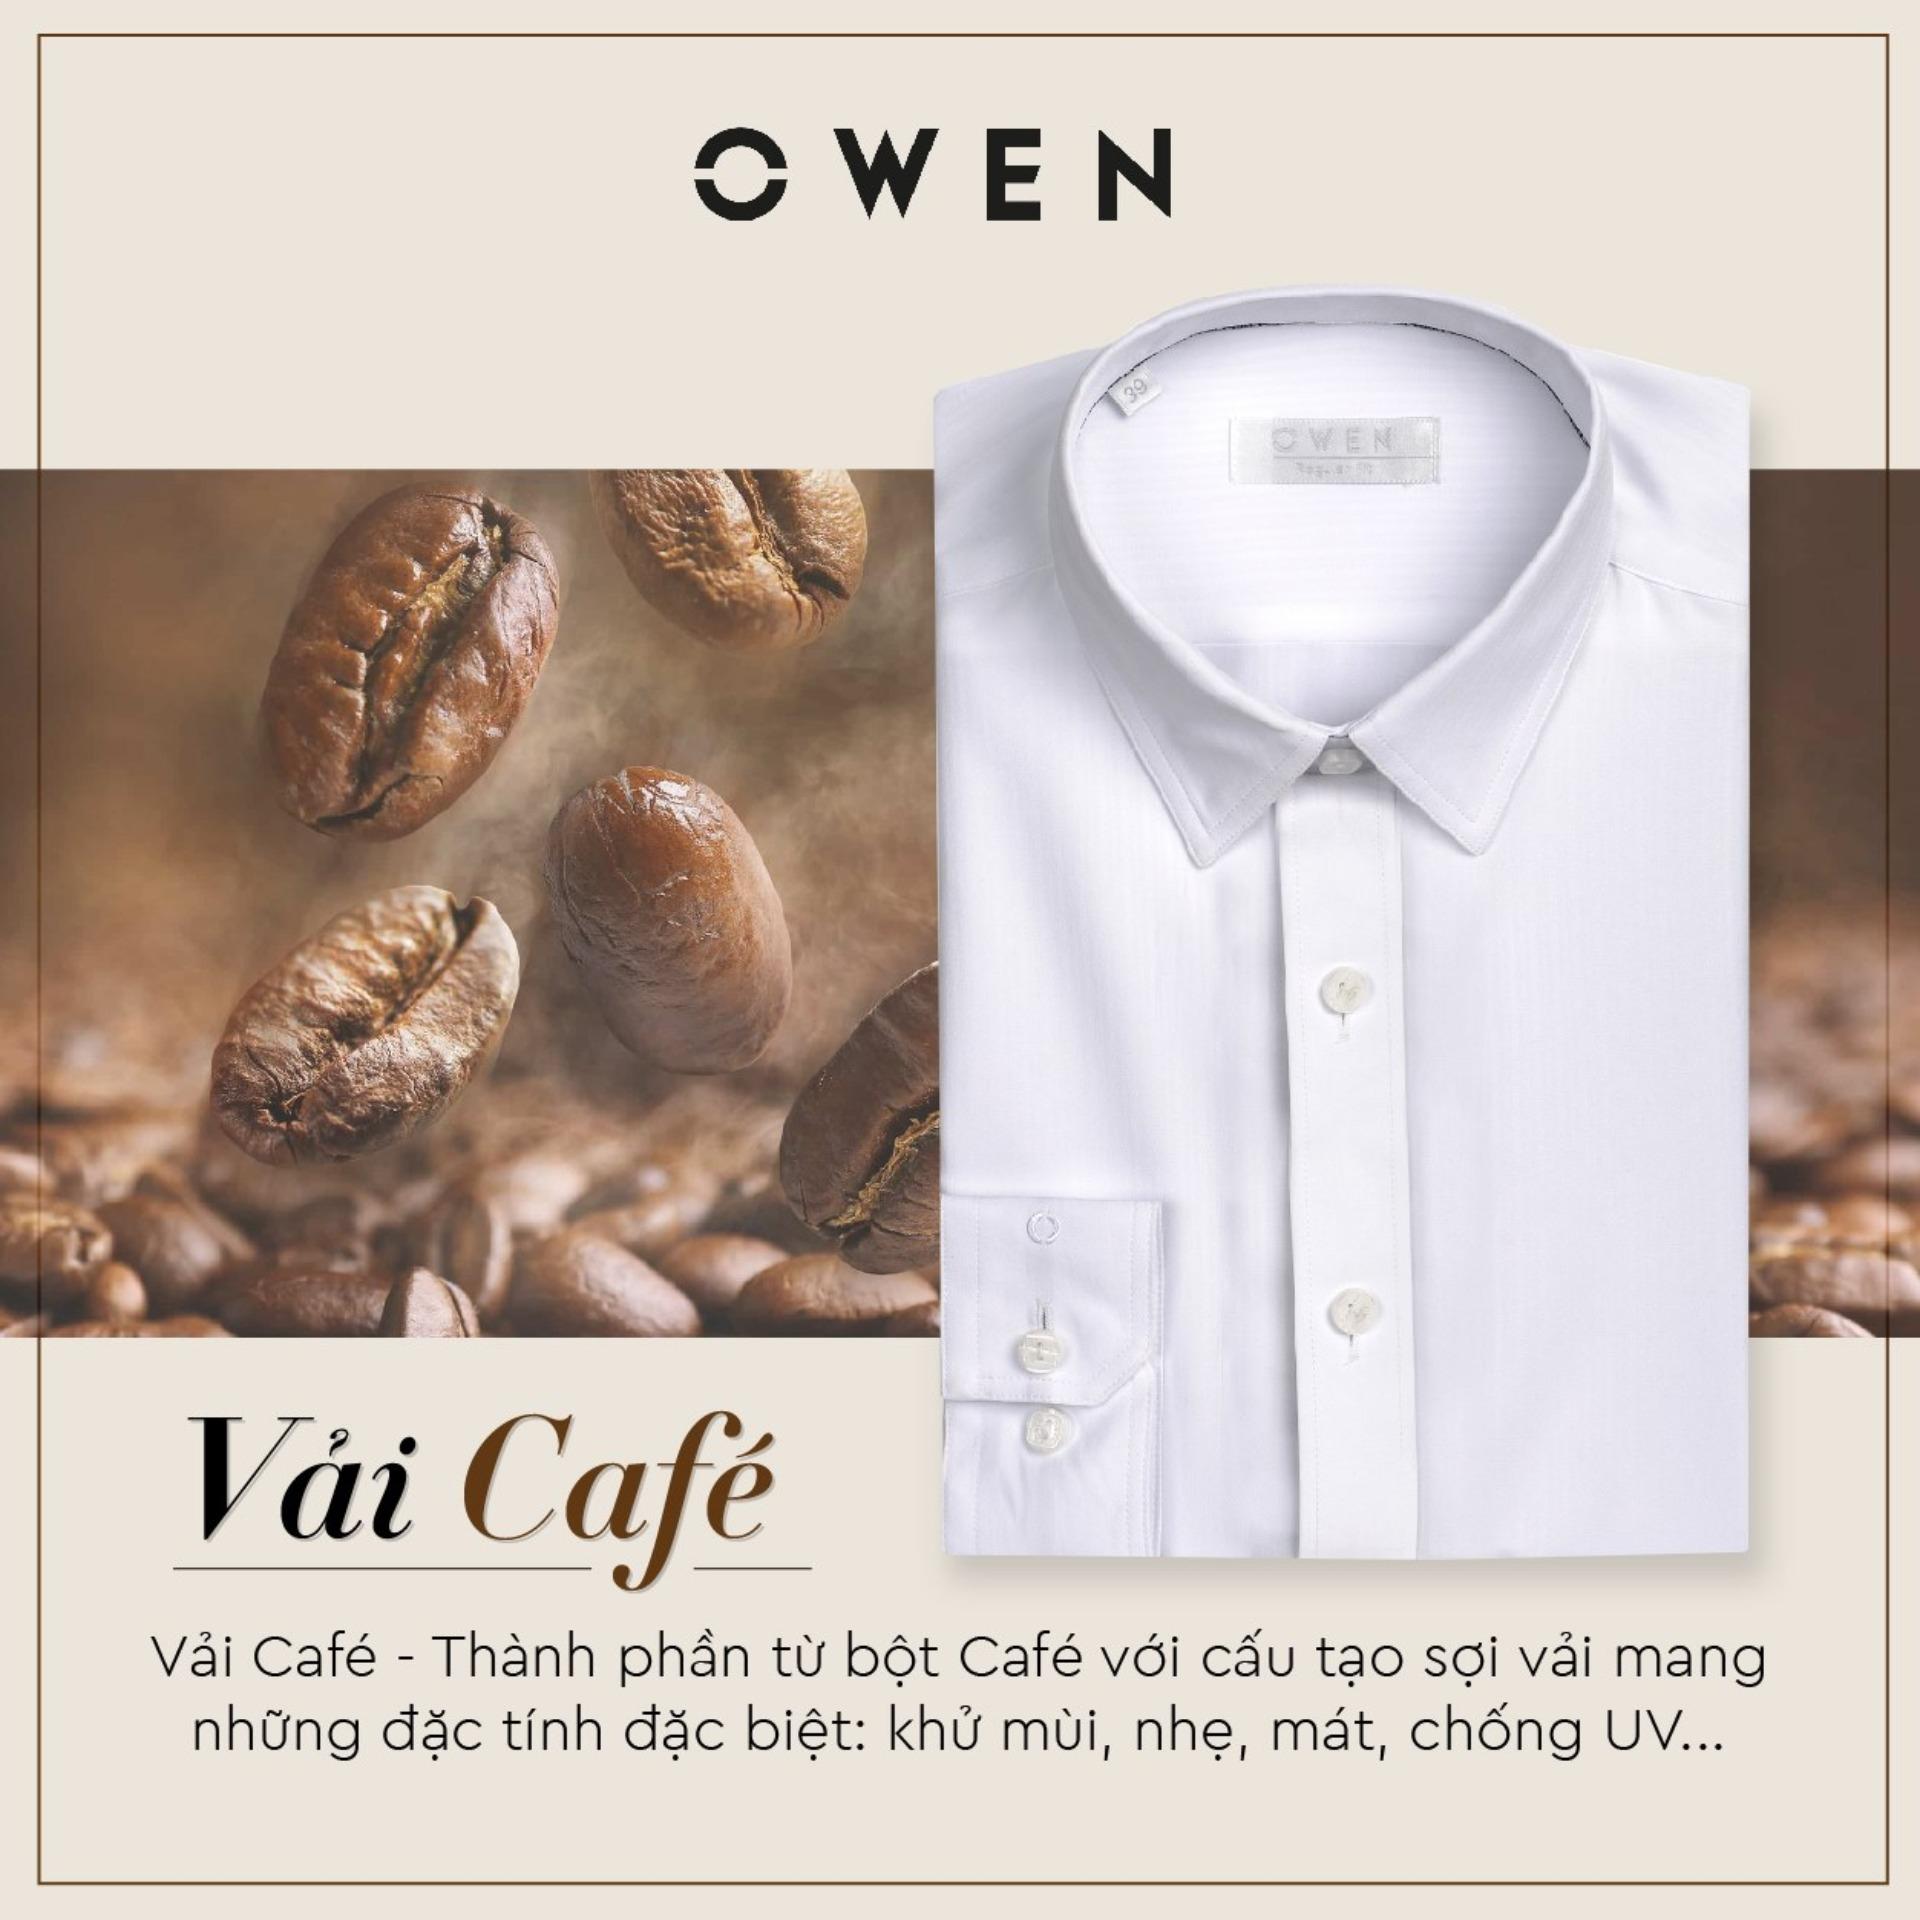 Mách bạn cách chọn áo sơ mi nam Owen chuẩn nhất  Thời trang  Phụ kiện   Thuvienmuasamcom